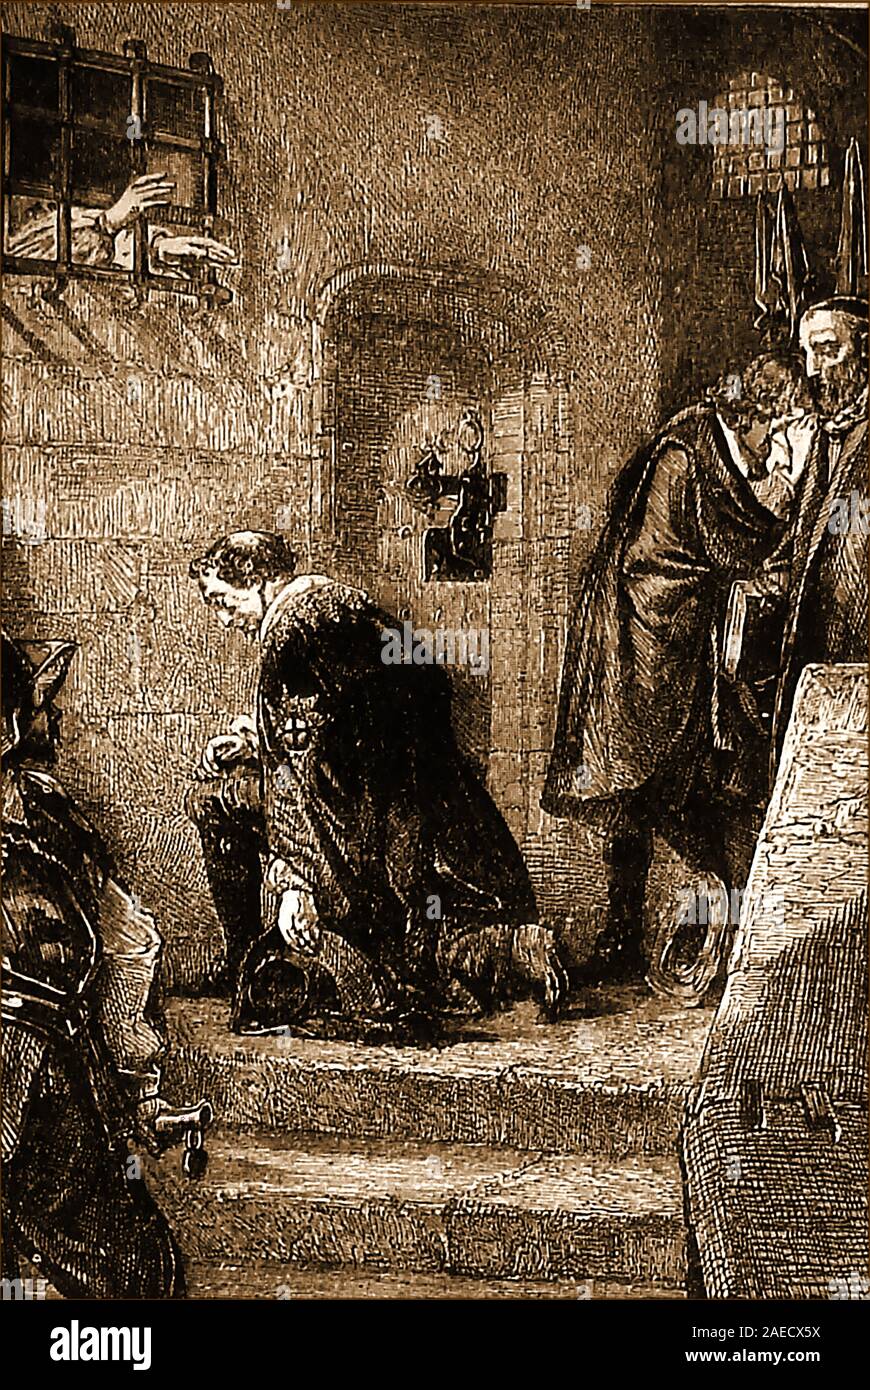 Edward Stafford, (1478 - 17 de mayo de 1521), el 3º duque de Buckingham, fue decapitado en Tower Hill fuera de la Torre de Londres, tras ser declarado culpable de alta traición contra Henry VIII, su primo hermano, una vez retirado .Esta vieja ilustración muestra él orando en la cárcel inmediatamente antes de la ejecución, recitando el "salmos penitenciales". Él era 43. Foto de stock